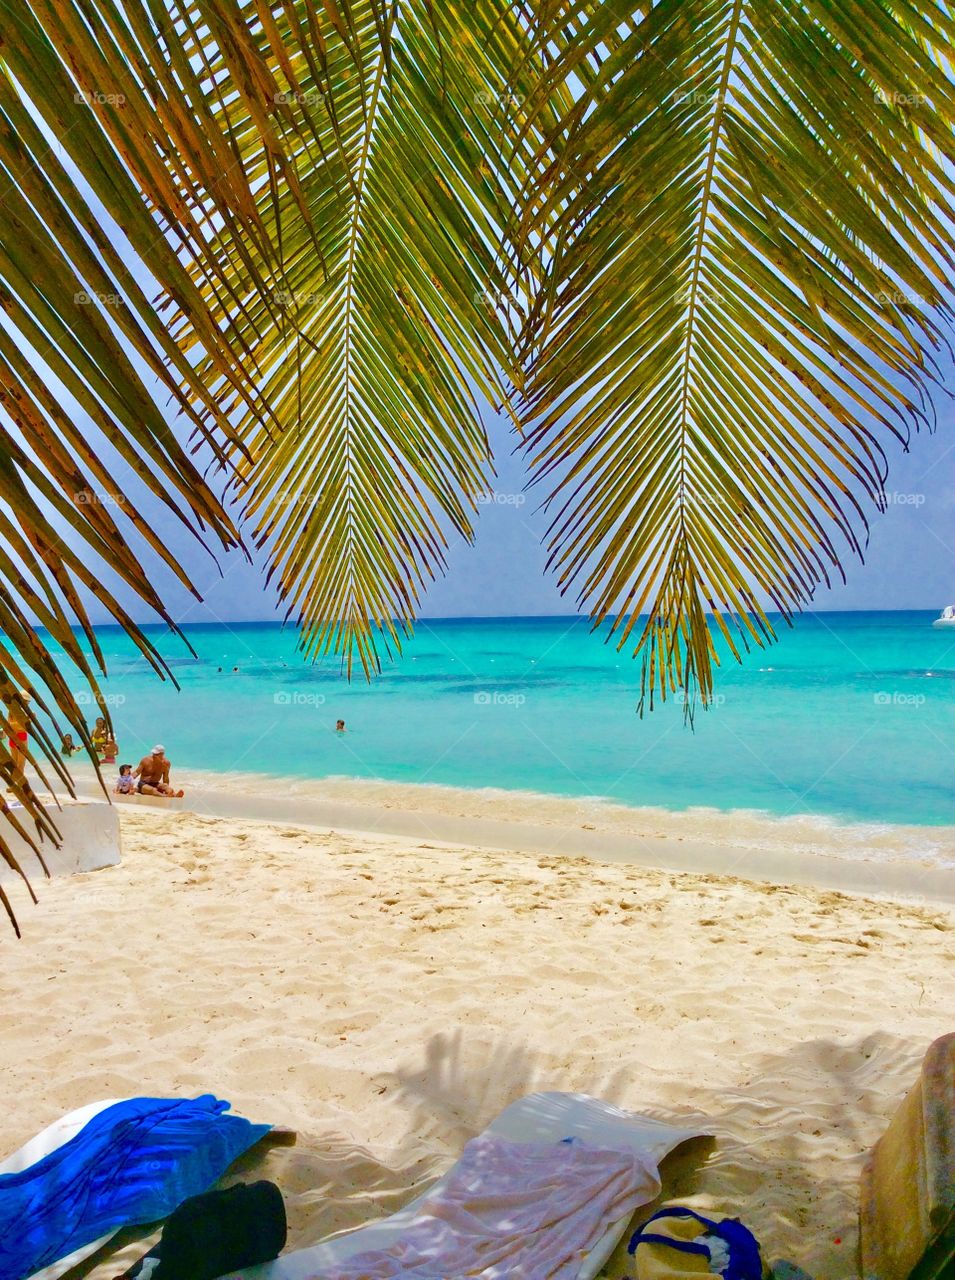 Beach & palm trees🌴